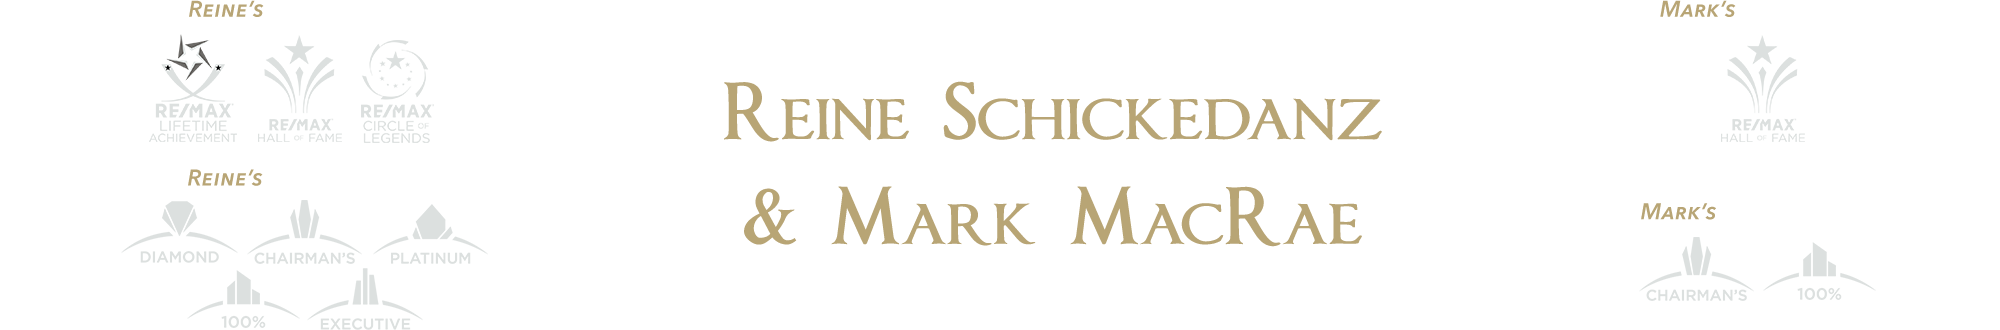 Reine Schickedanz & Mark MacRae Graphic Header